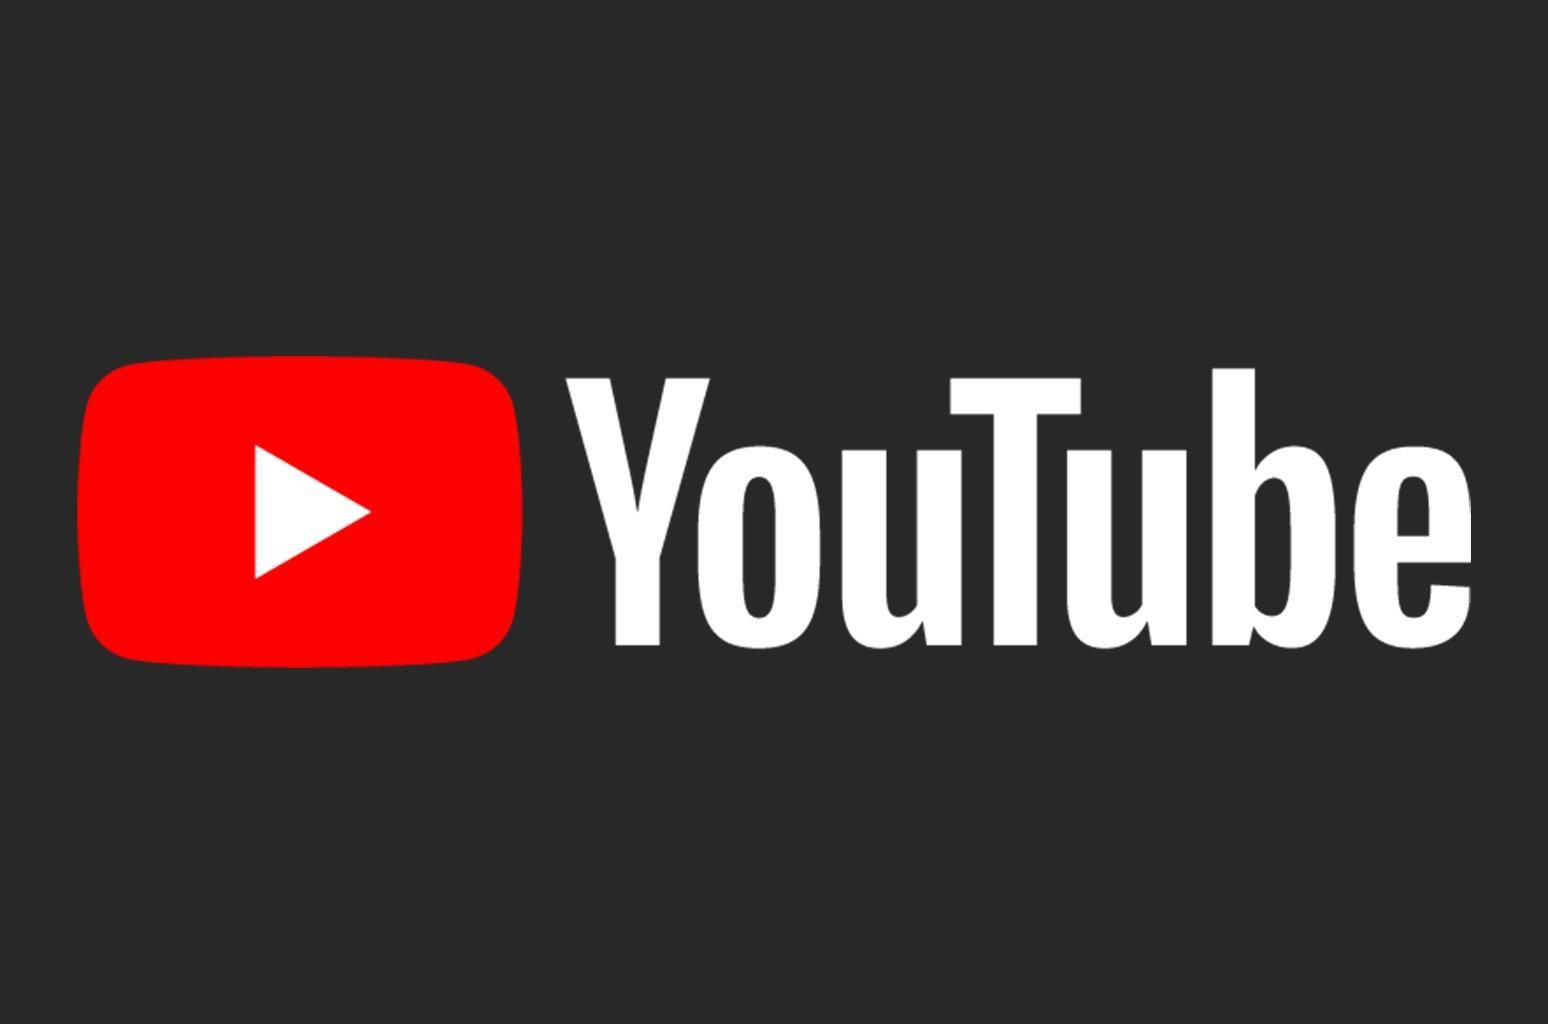 Cтандарты видео YouTube – новые правила пользования